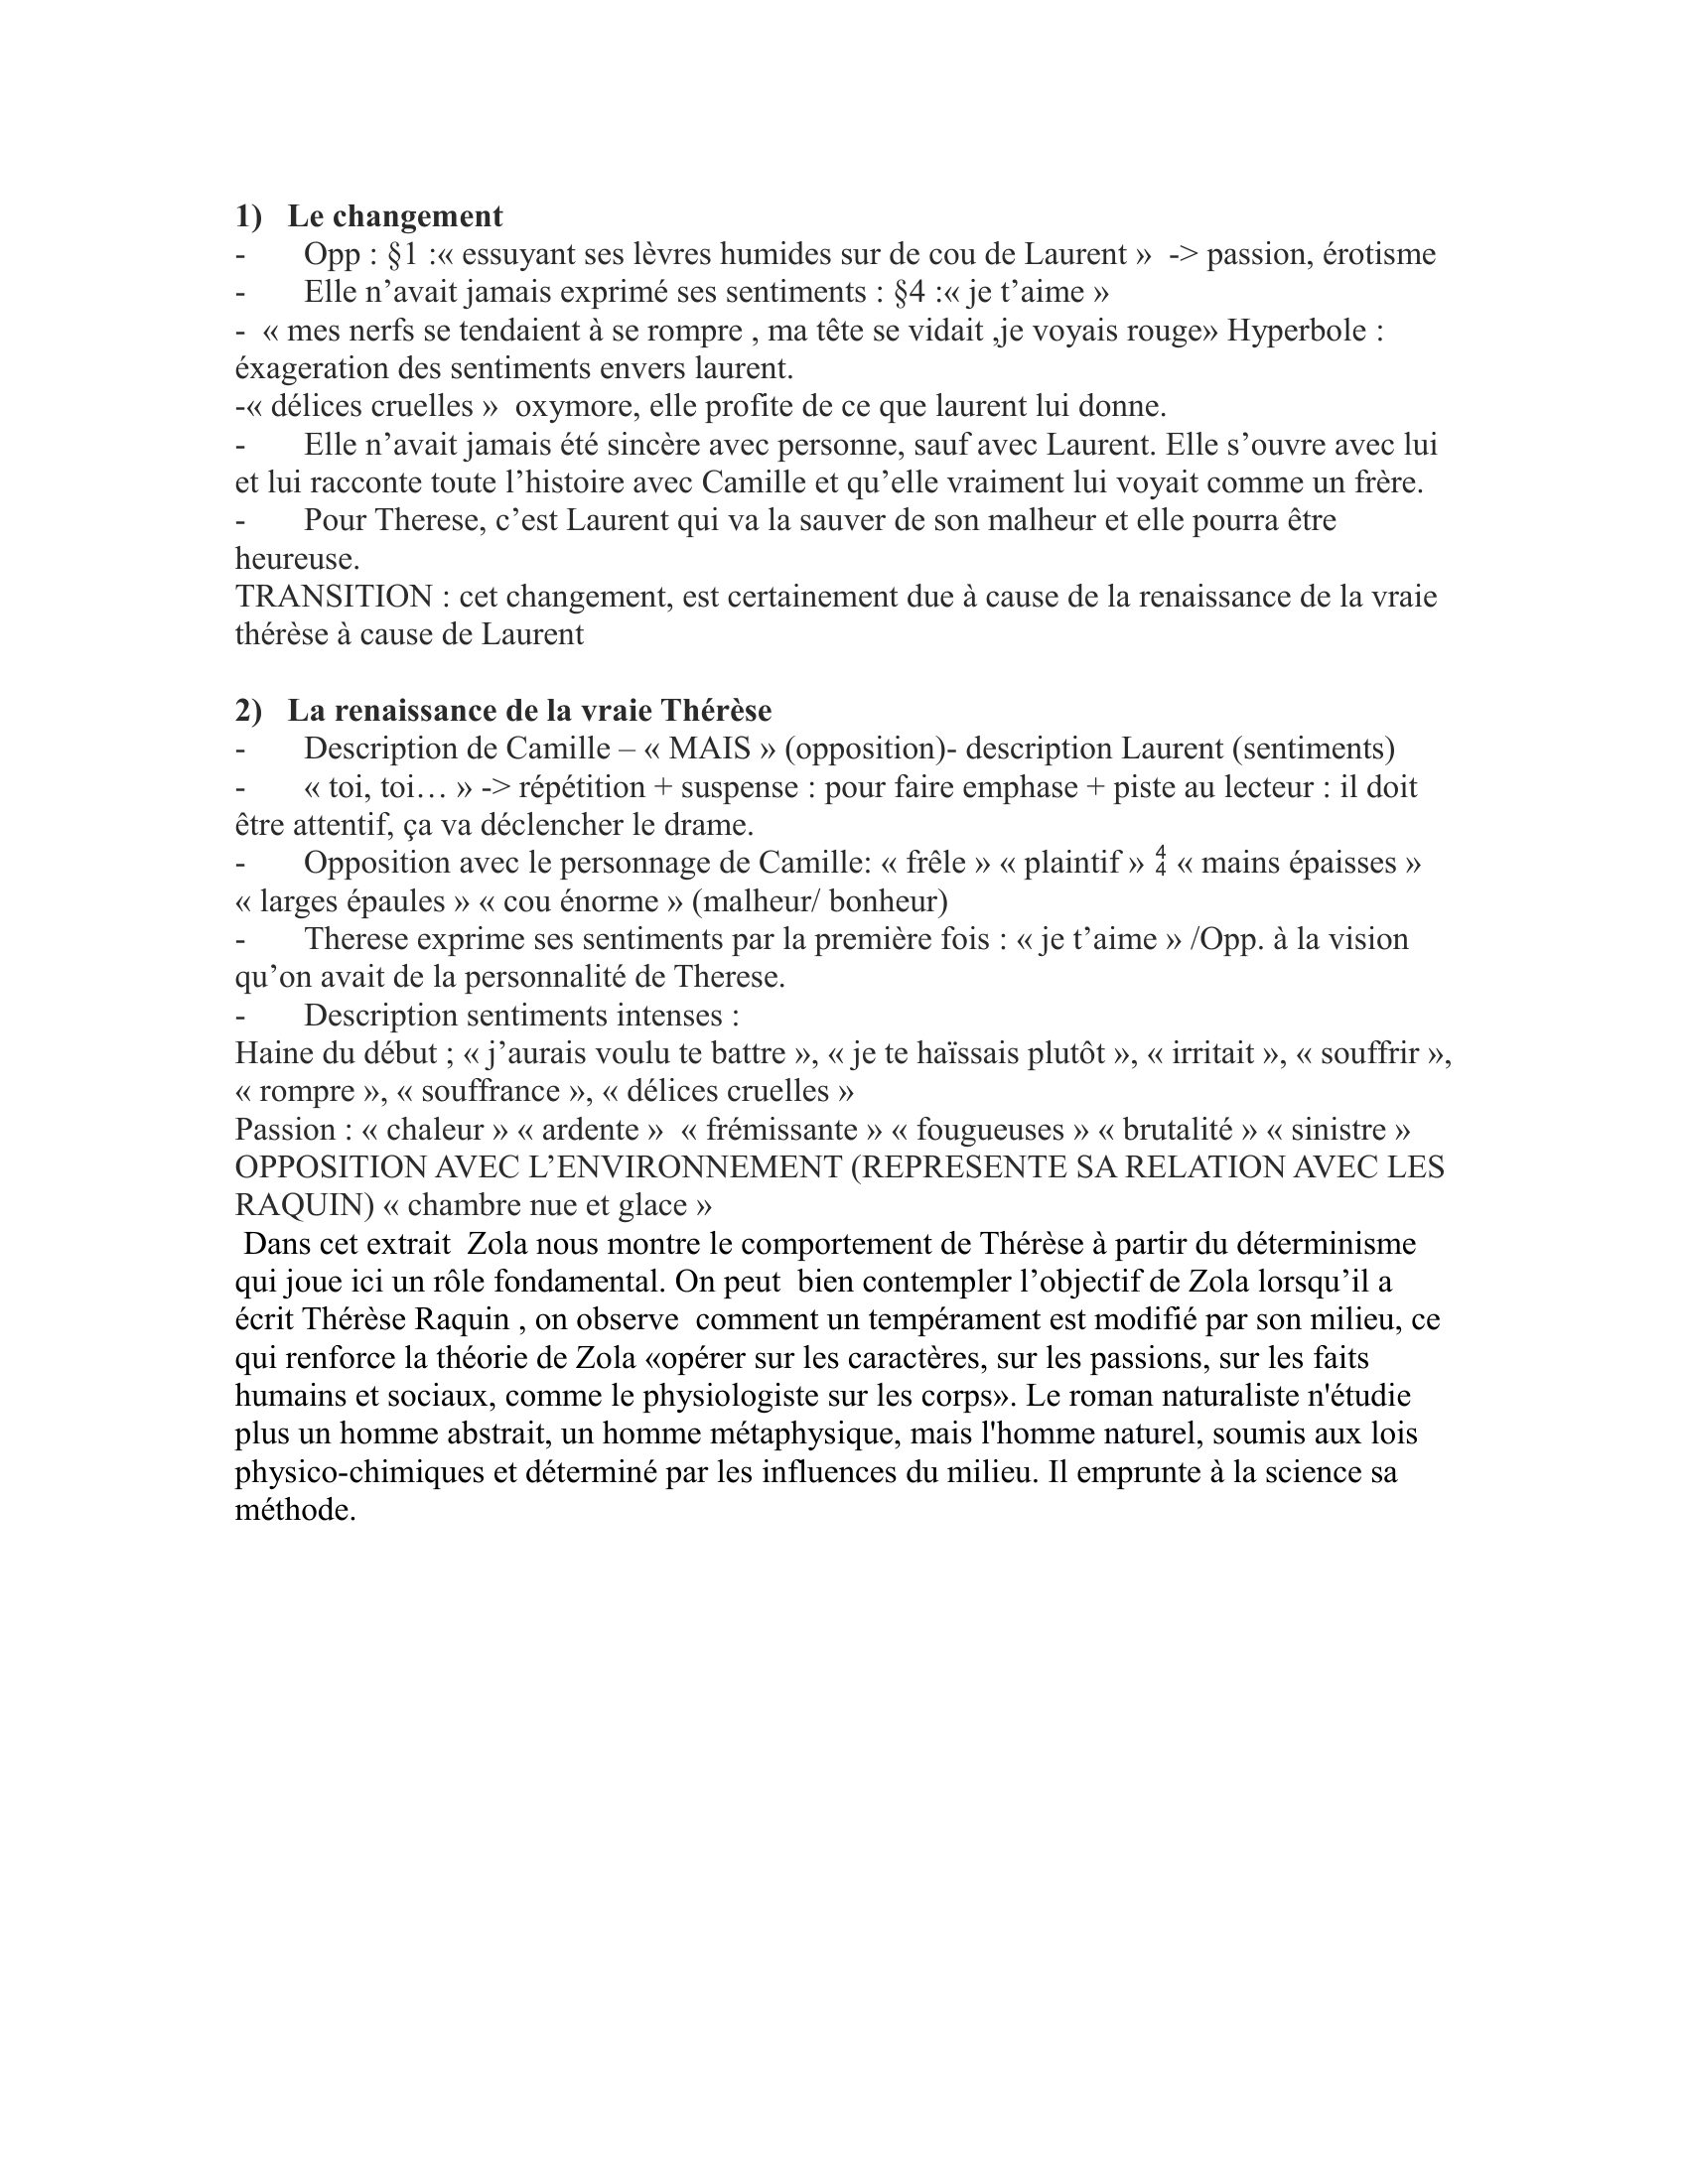 Prévisualisation du document chapitre VII Thérèse Raquin de Zola (commentaire)